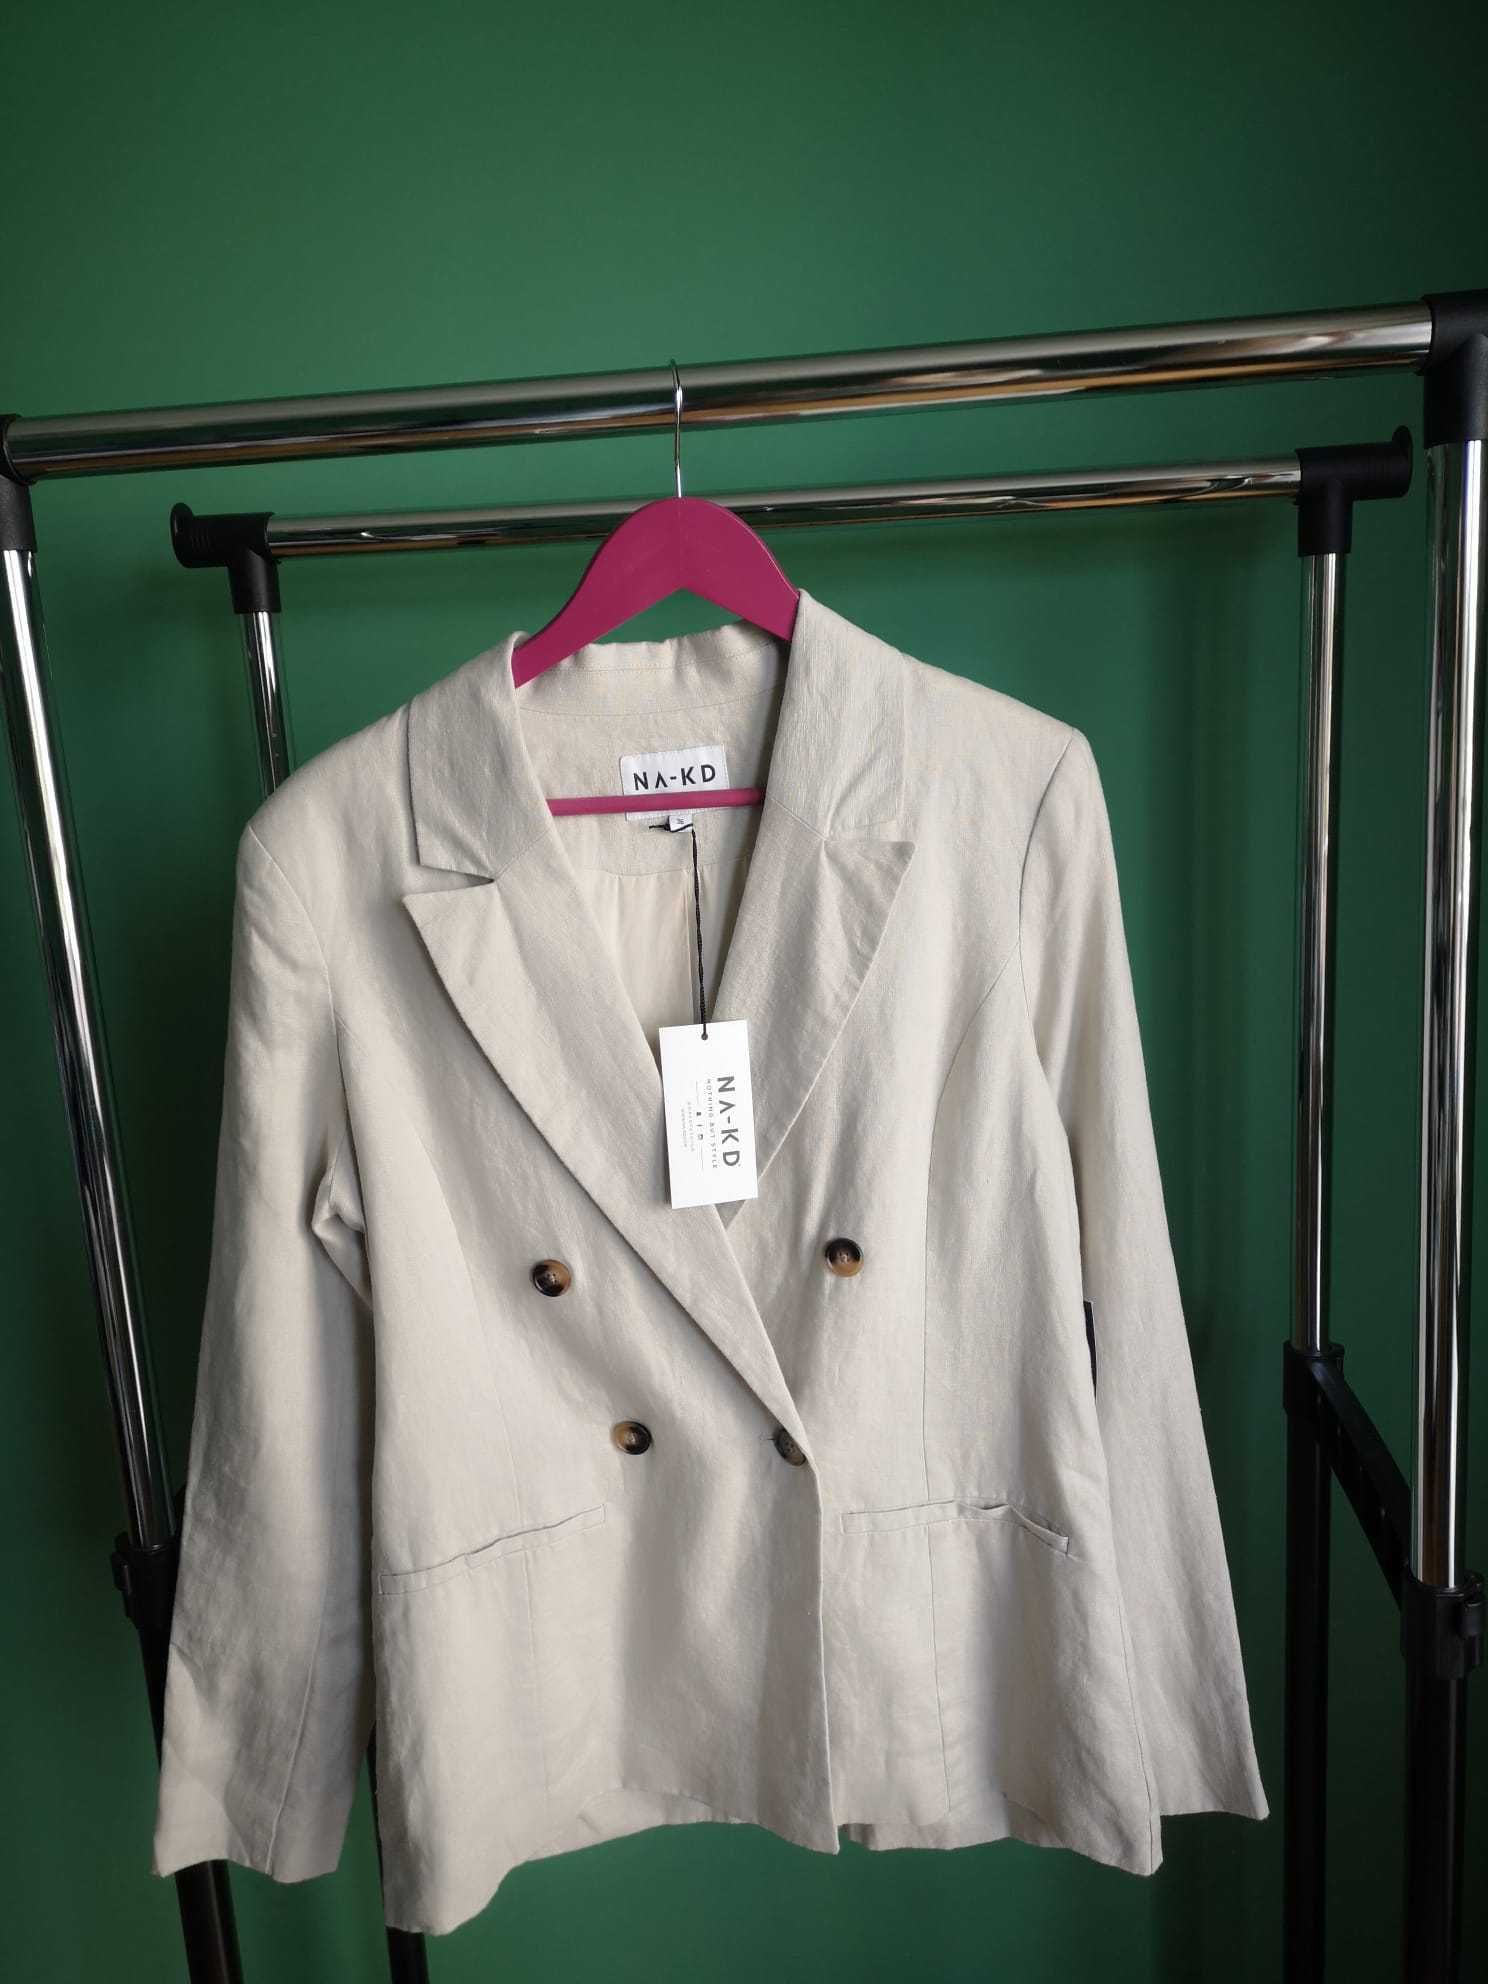 Ново сако с етикет на марката NA-KD, закупено от сайта им.